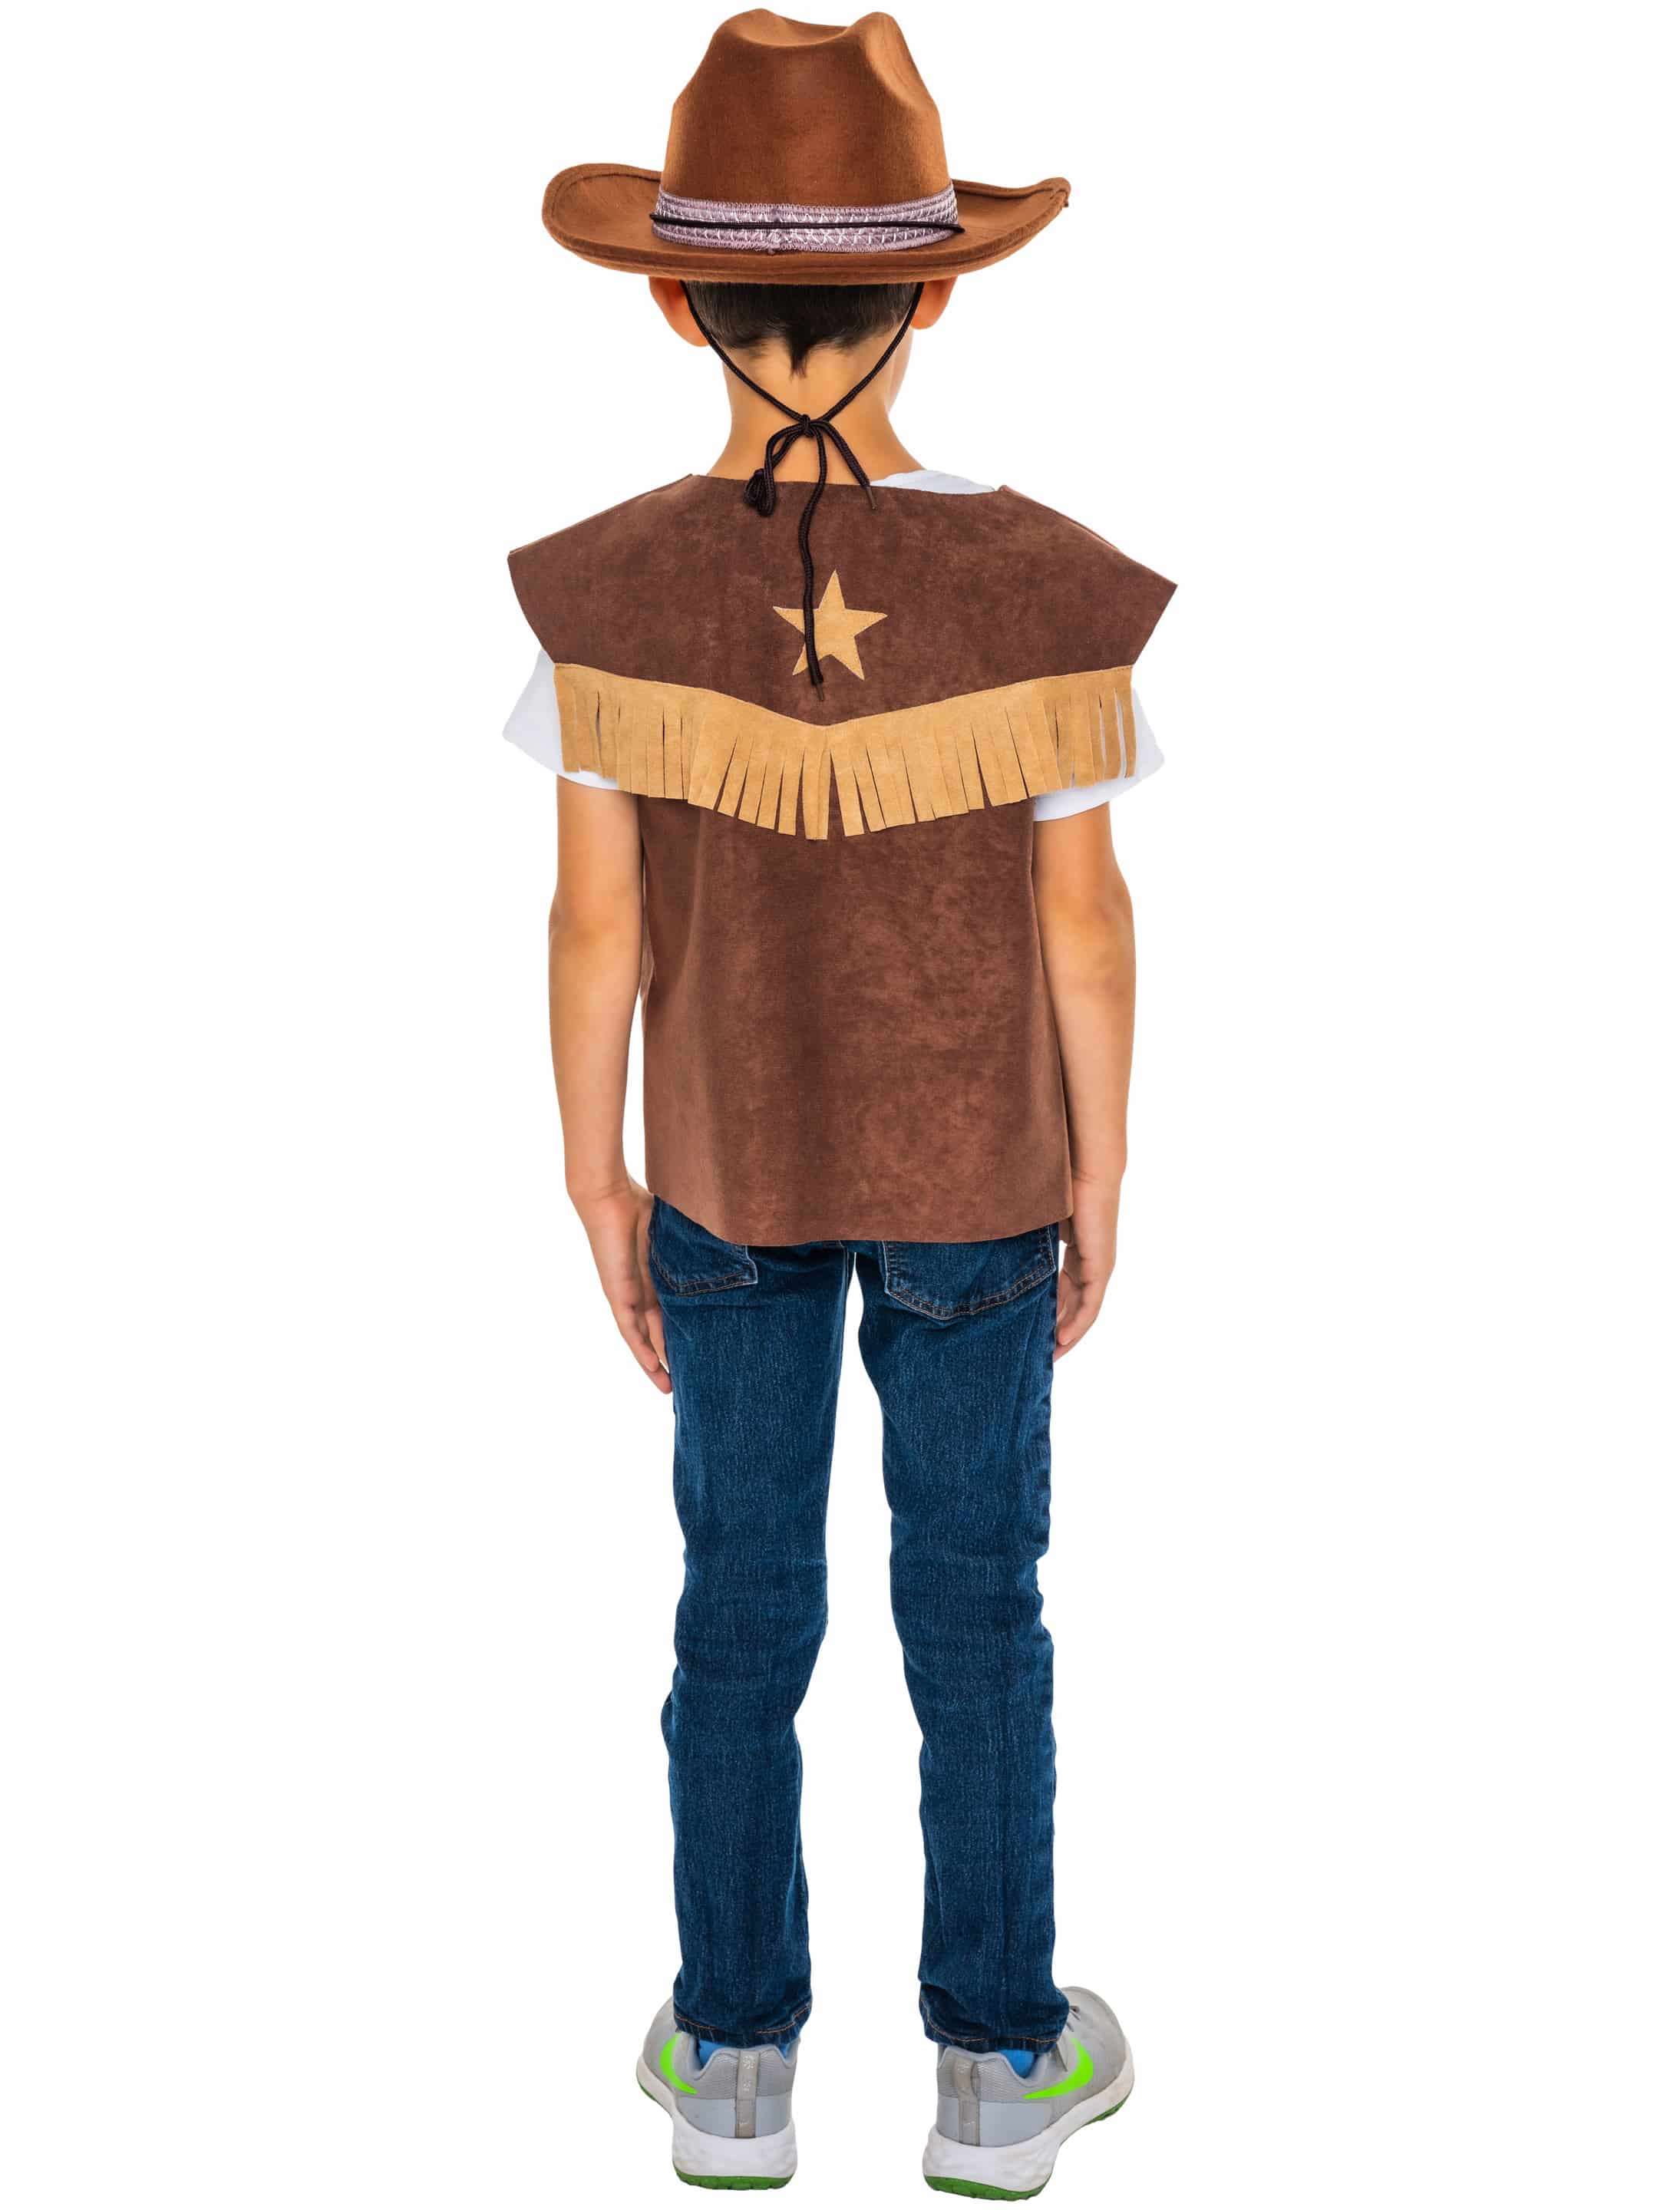 Weste Cowboy Kinder mit Stern braun 116-128